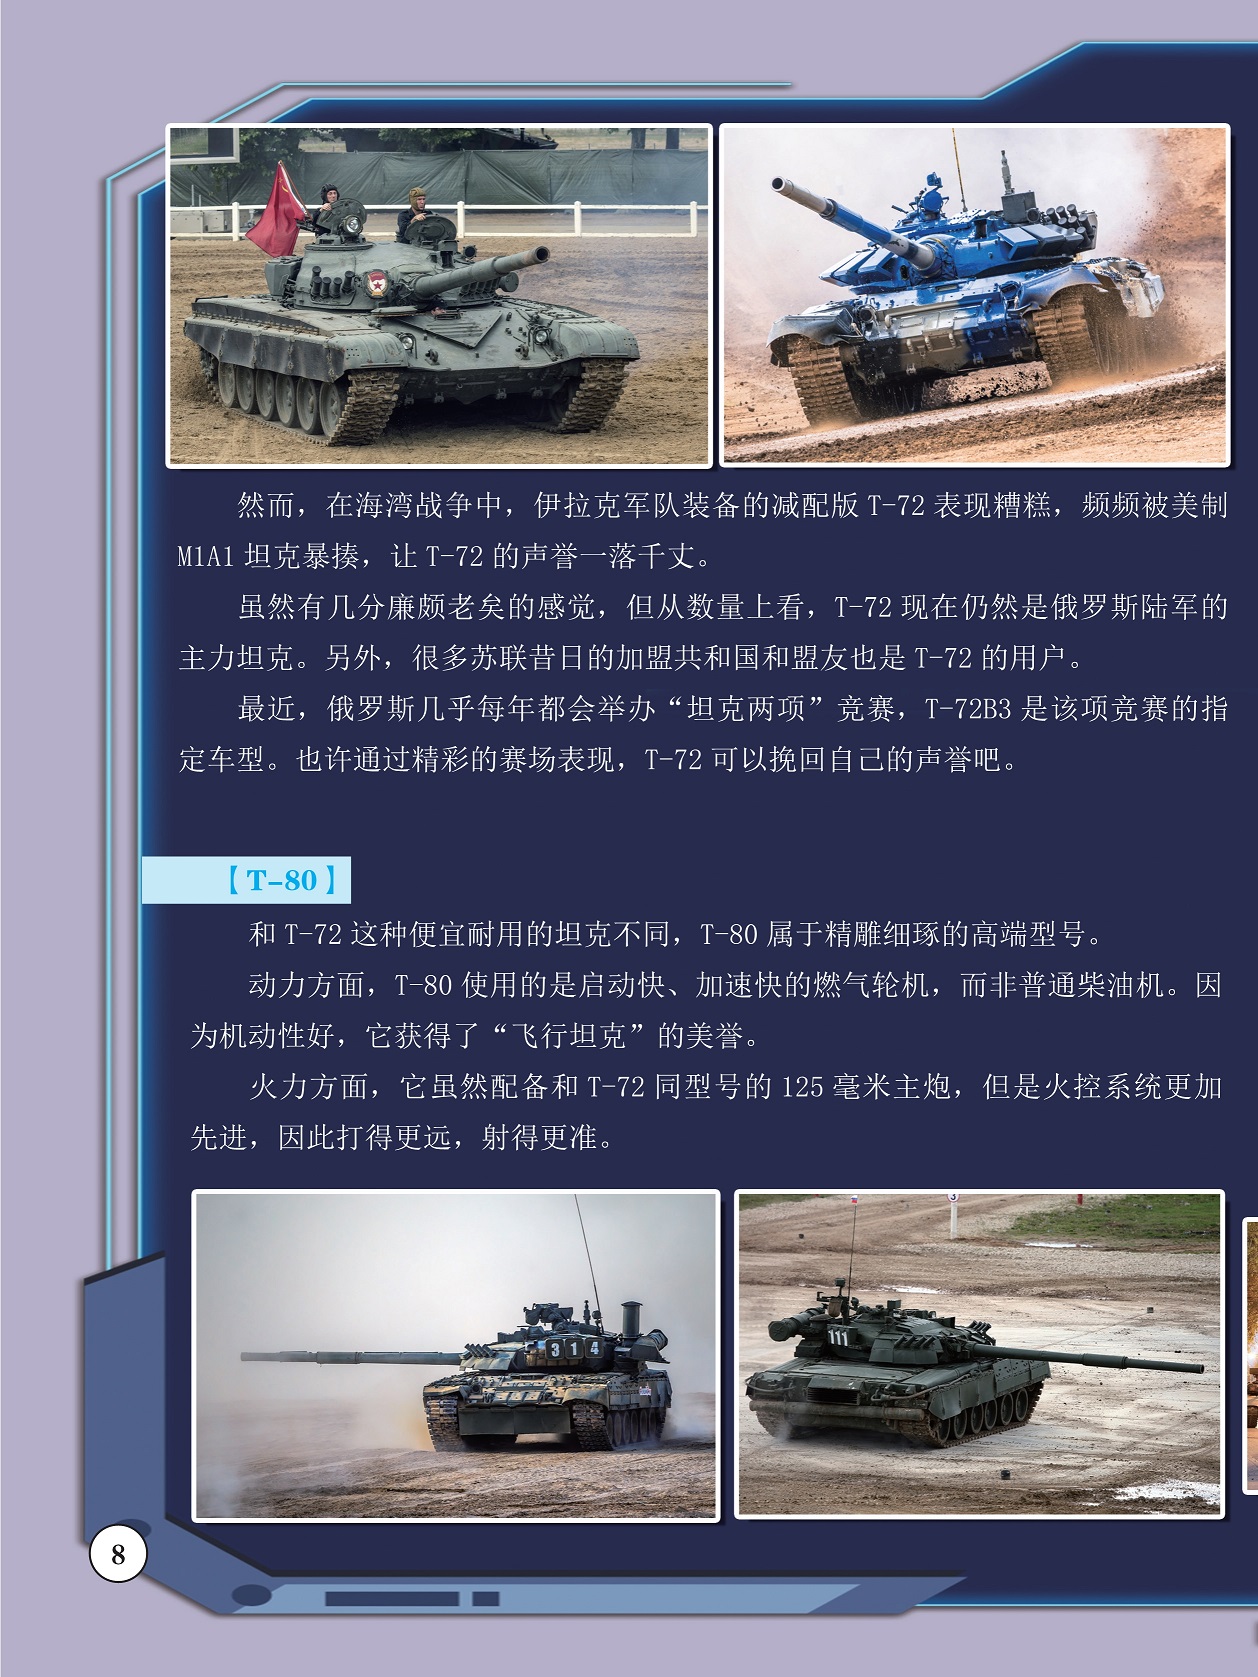 伊拉克军队装备的减配版T-72表现糟糕,T-80获得了“飞行坦克”的美誉